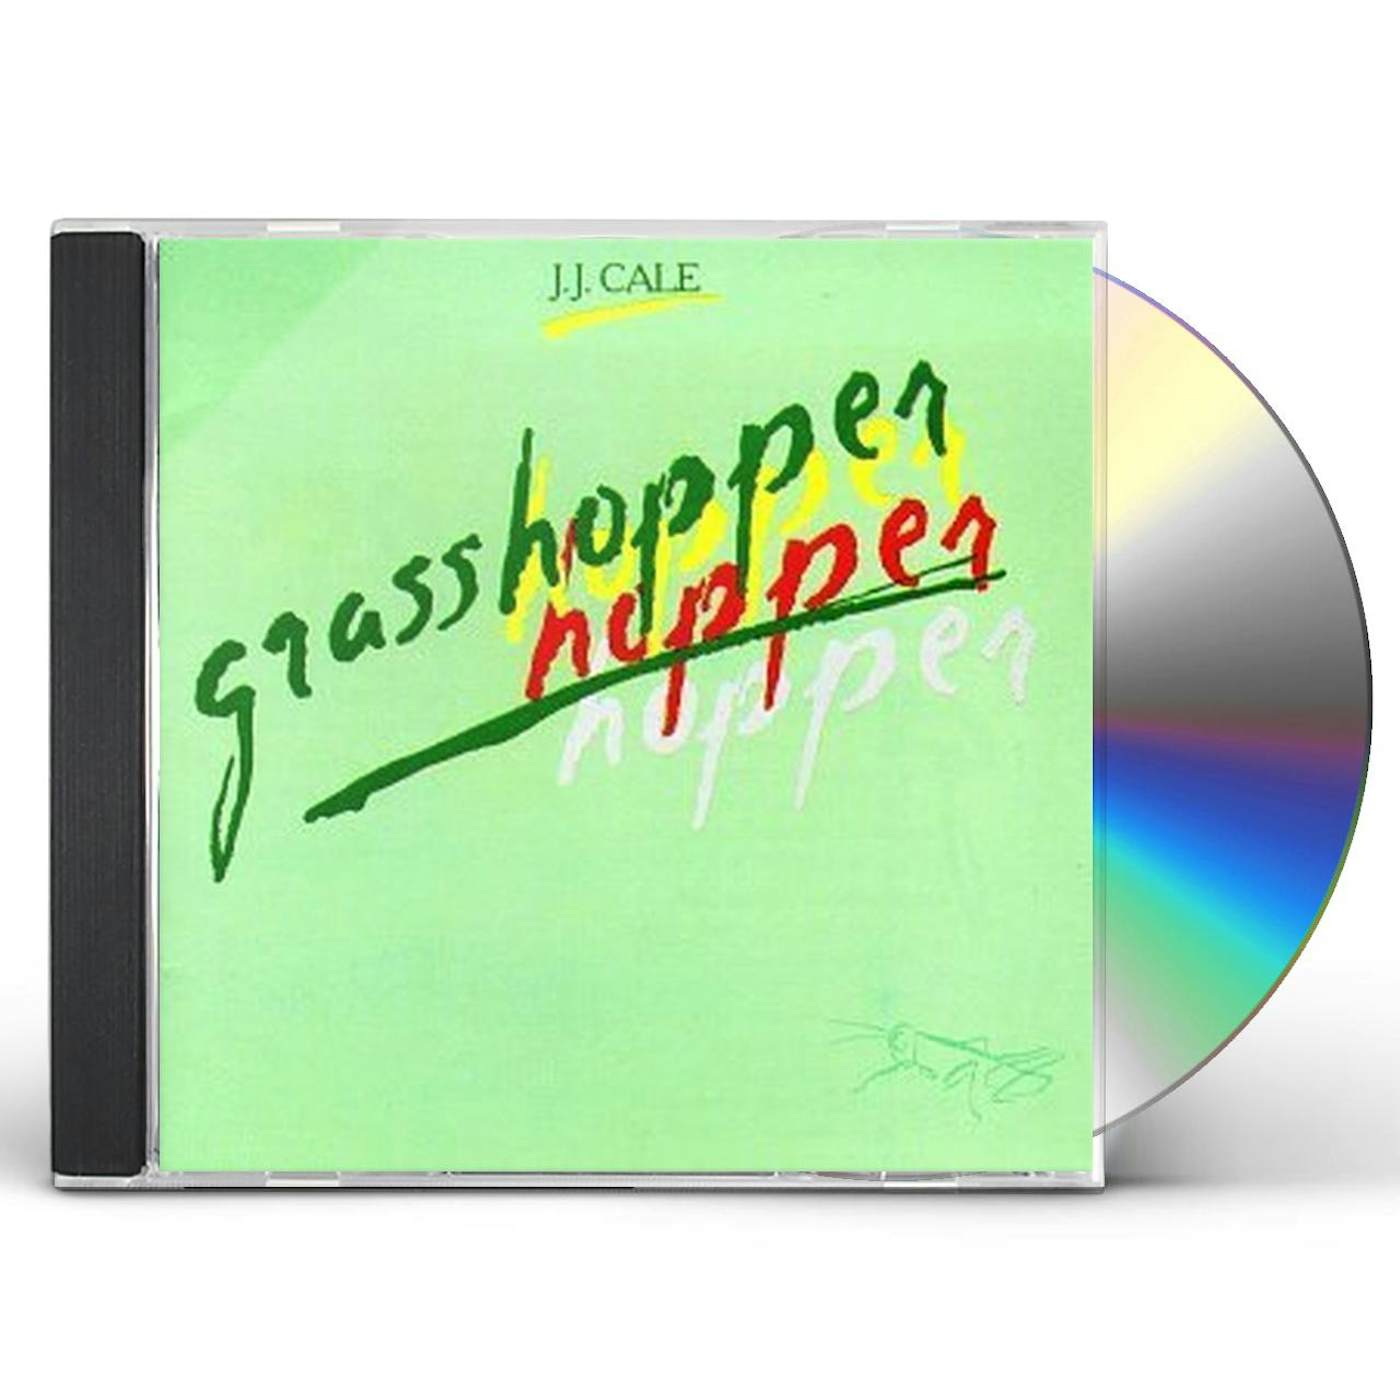 J.J. Cale GRASSHOPPER CD